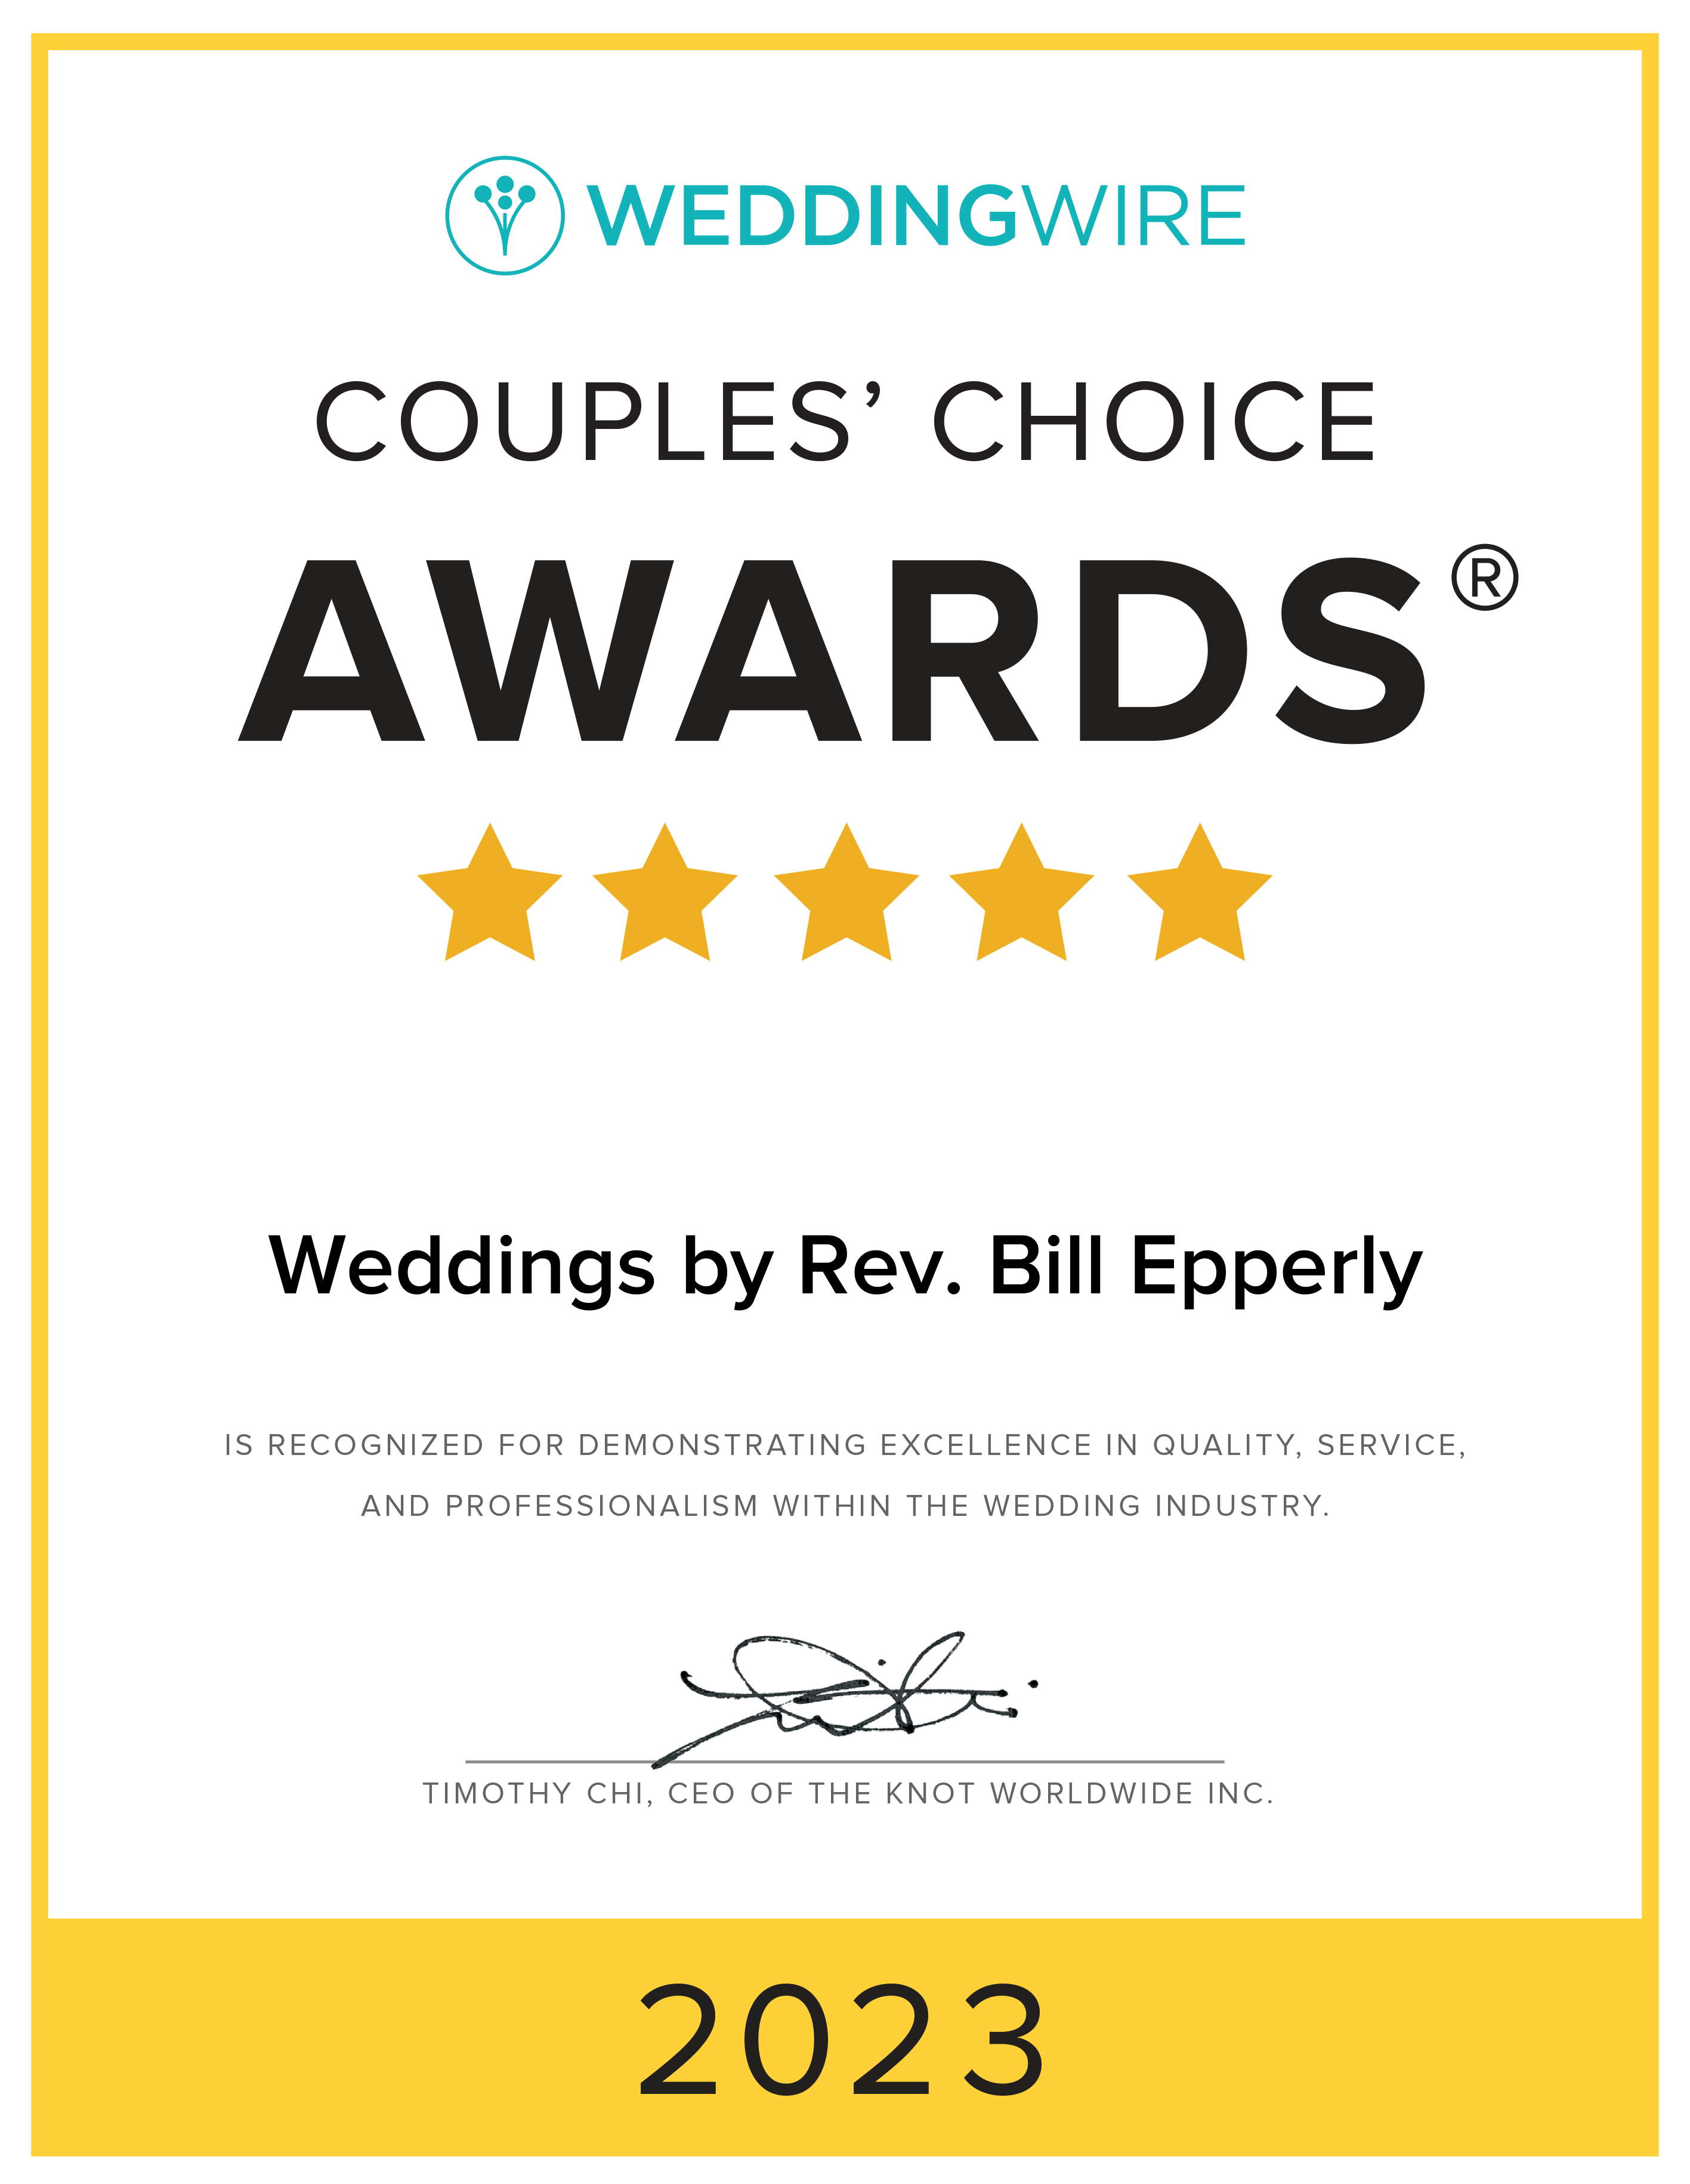 Weddings by Rev. Bill Epperly